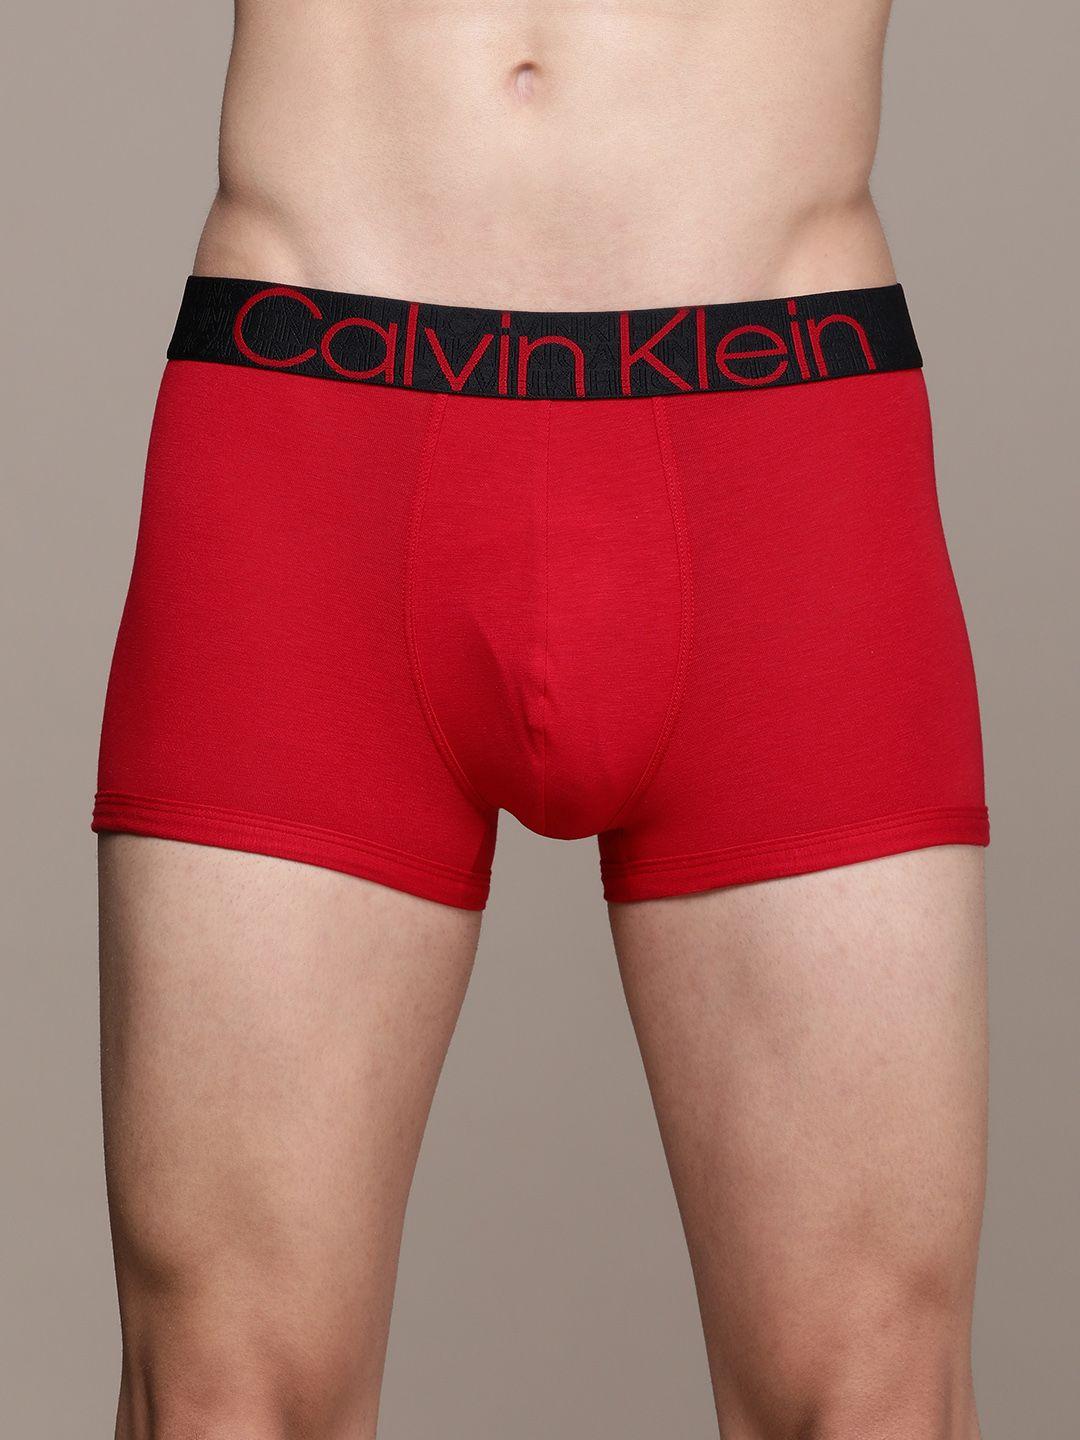 calvin klein underwear men red solid low rise trunk